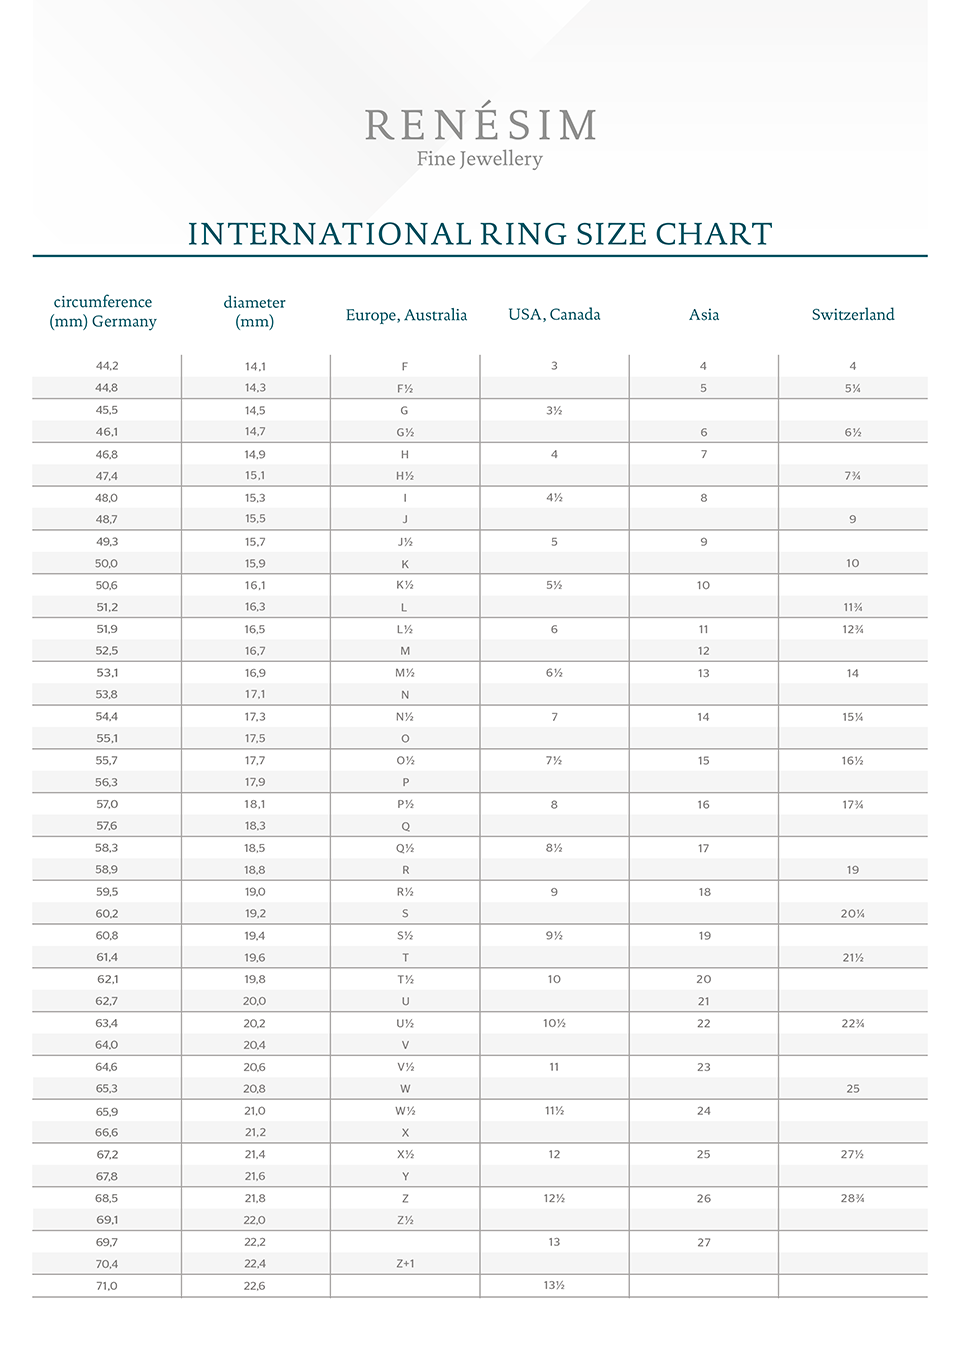 International Ring Size Chart